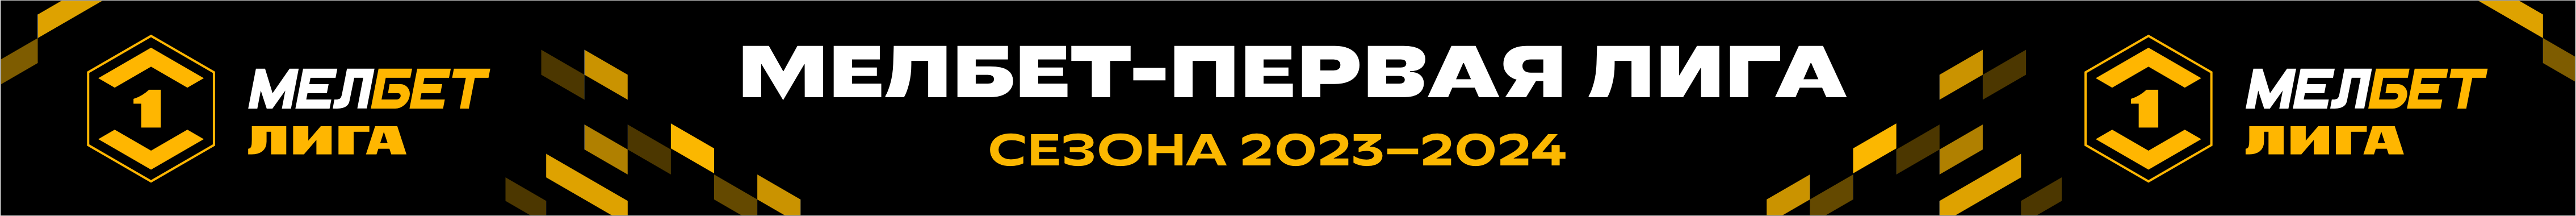 Мелбет первая лига таблица 2023. Мелбет 1 лига. Мелбет первая лига логотип. Эмблема Мелбет 1 лига. Мелбет первая лига 2023-2024.